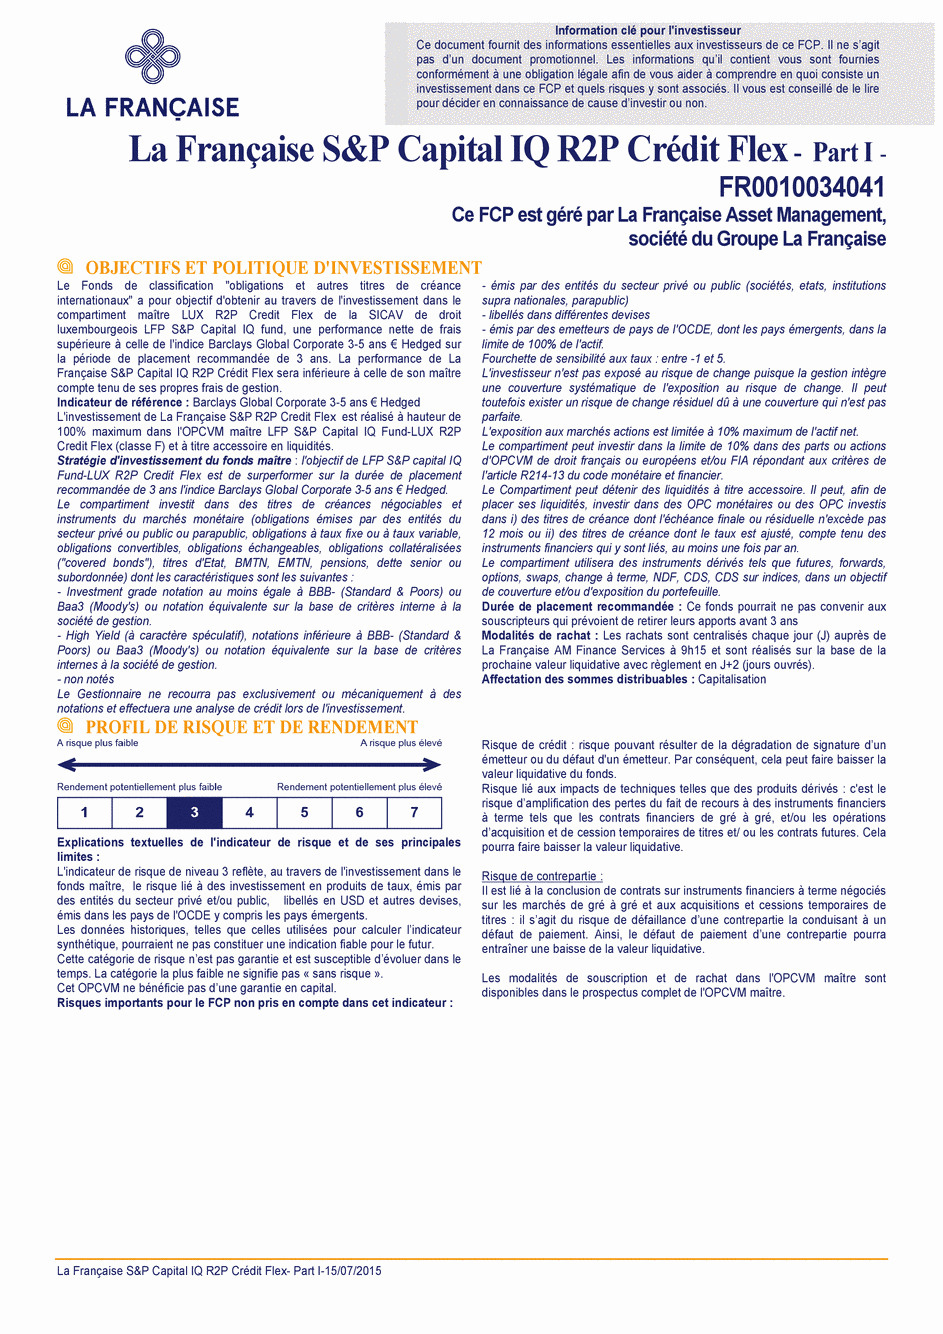 DICI La Française S&P Capital IQ R2P Crédit Flex - Part I - 15/07/2015 - Français